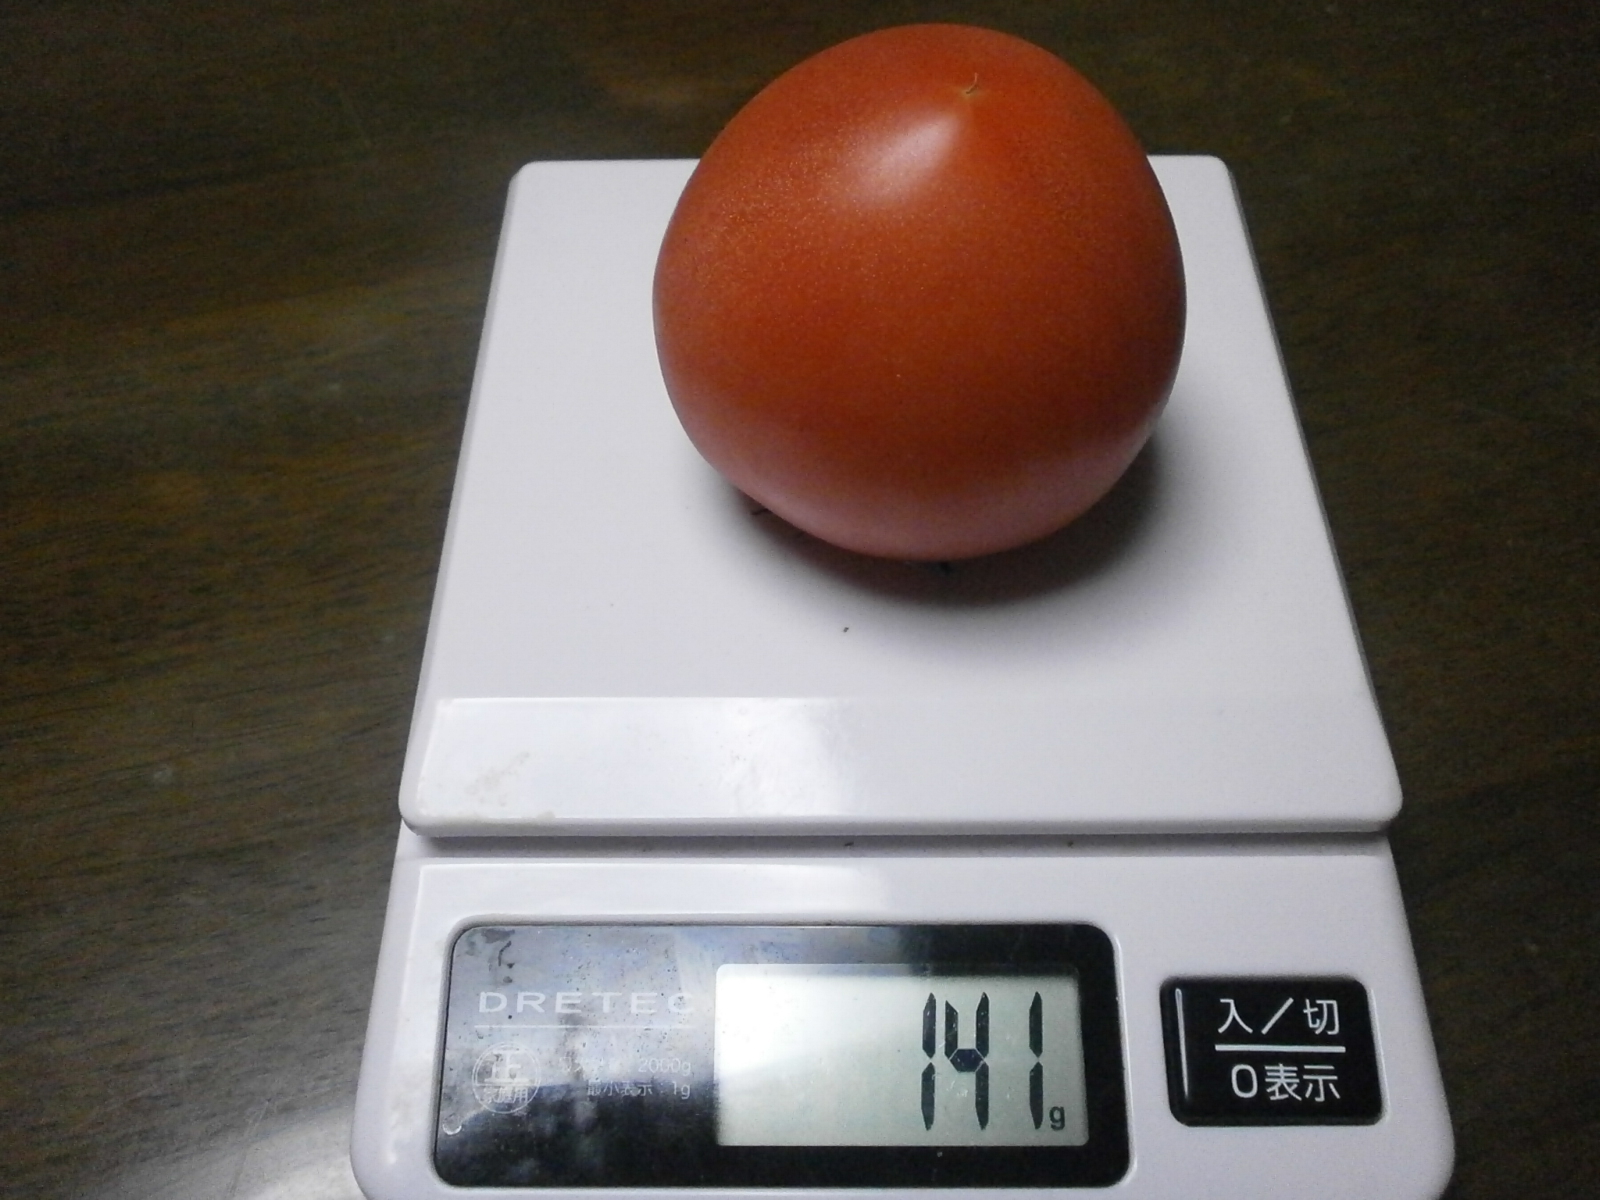 Pomodoro (141 / 136 g, 121 g/120 g g)